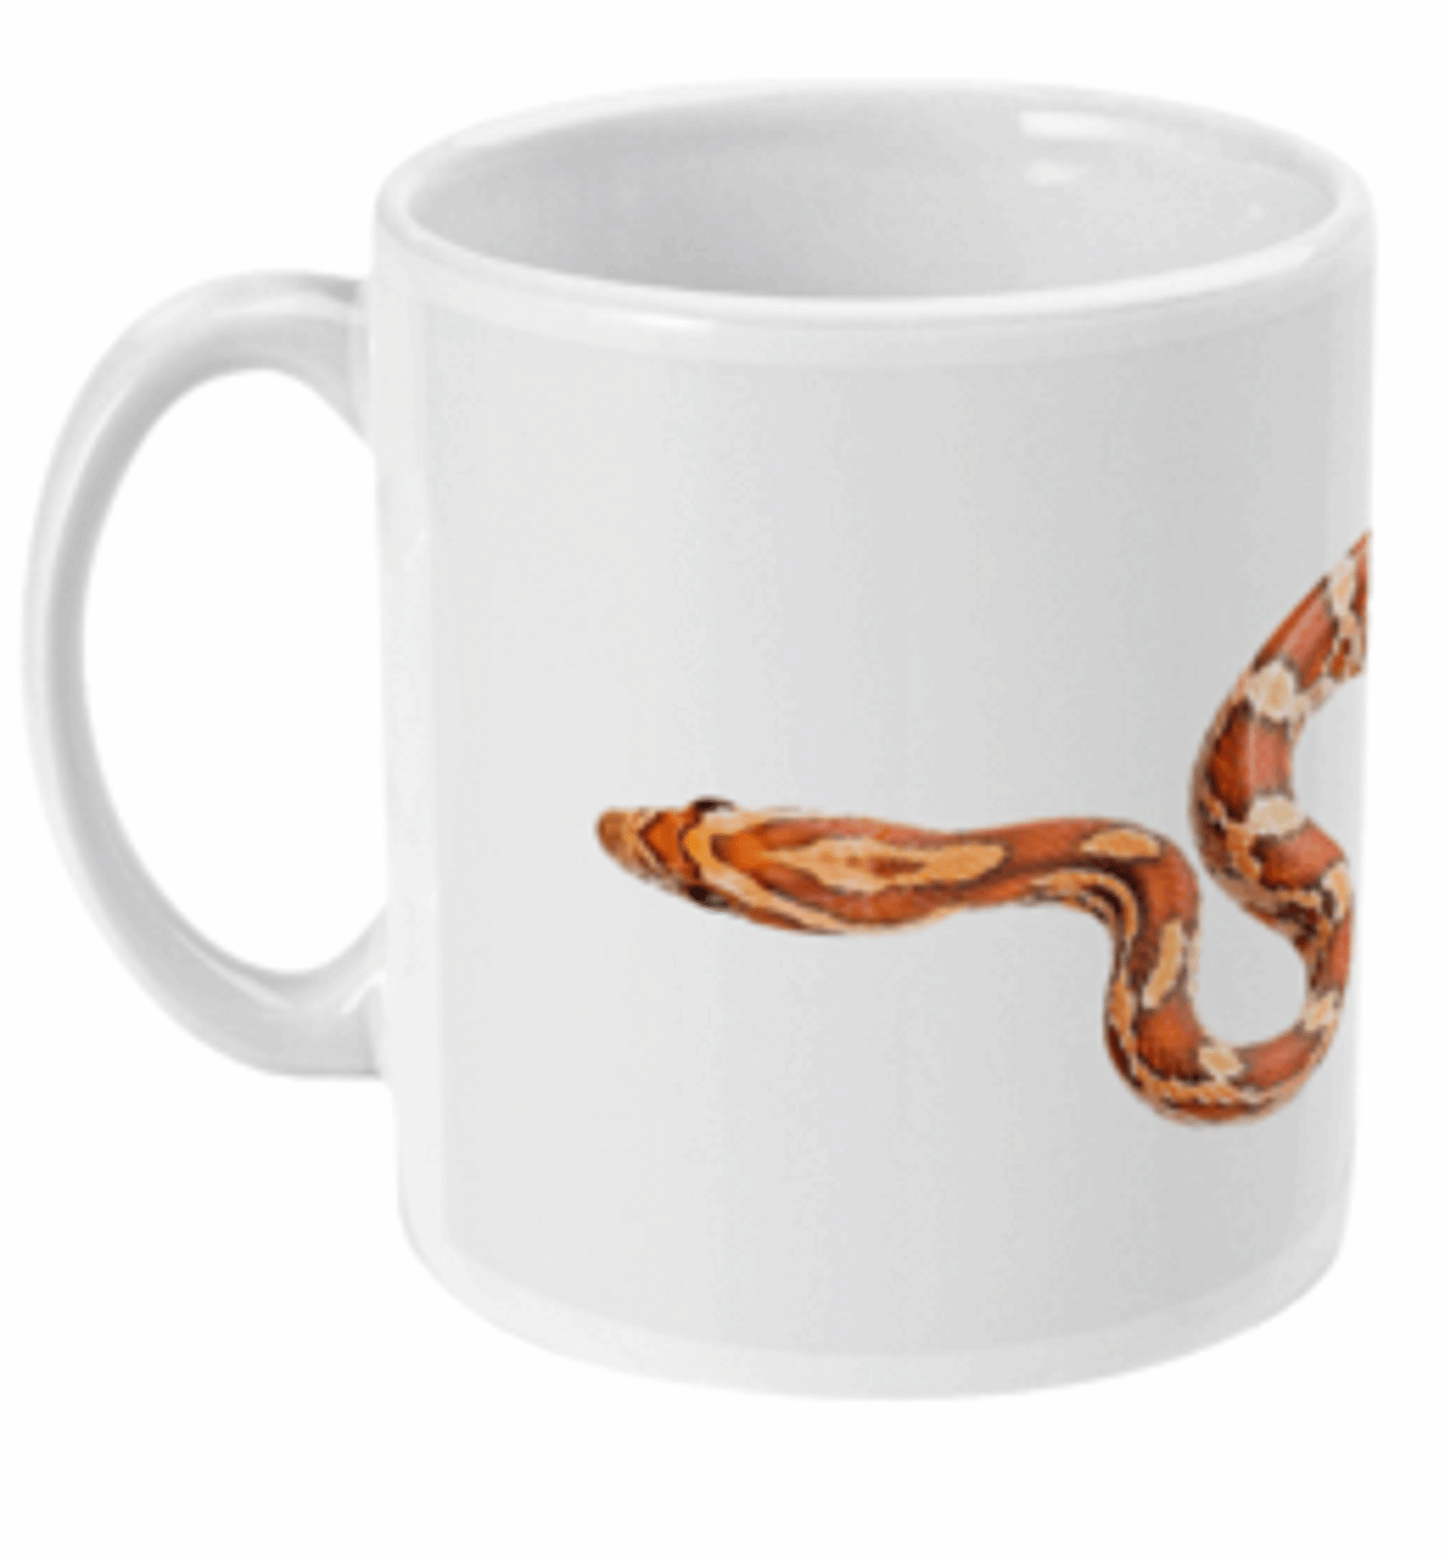  Corn Snake Wrapped Around Mug by Free Spirit Accessories sold by Free Spirit Accessories